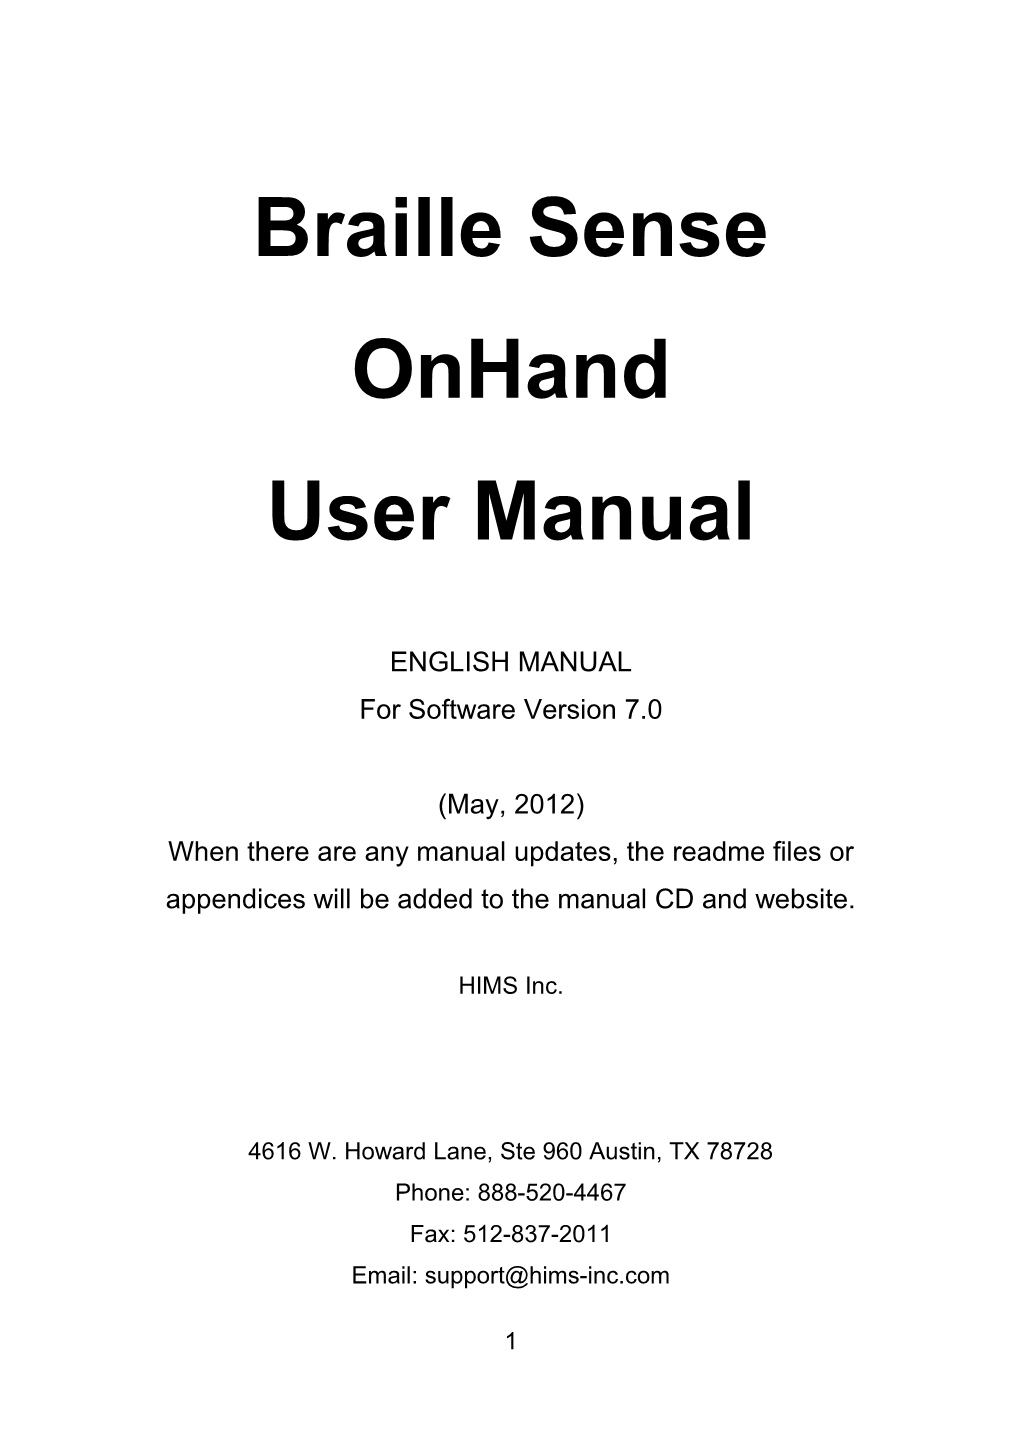 Braille Sense Onhand